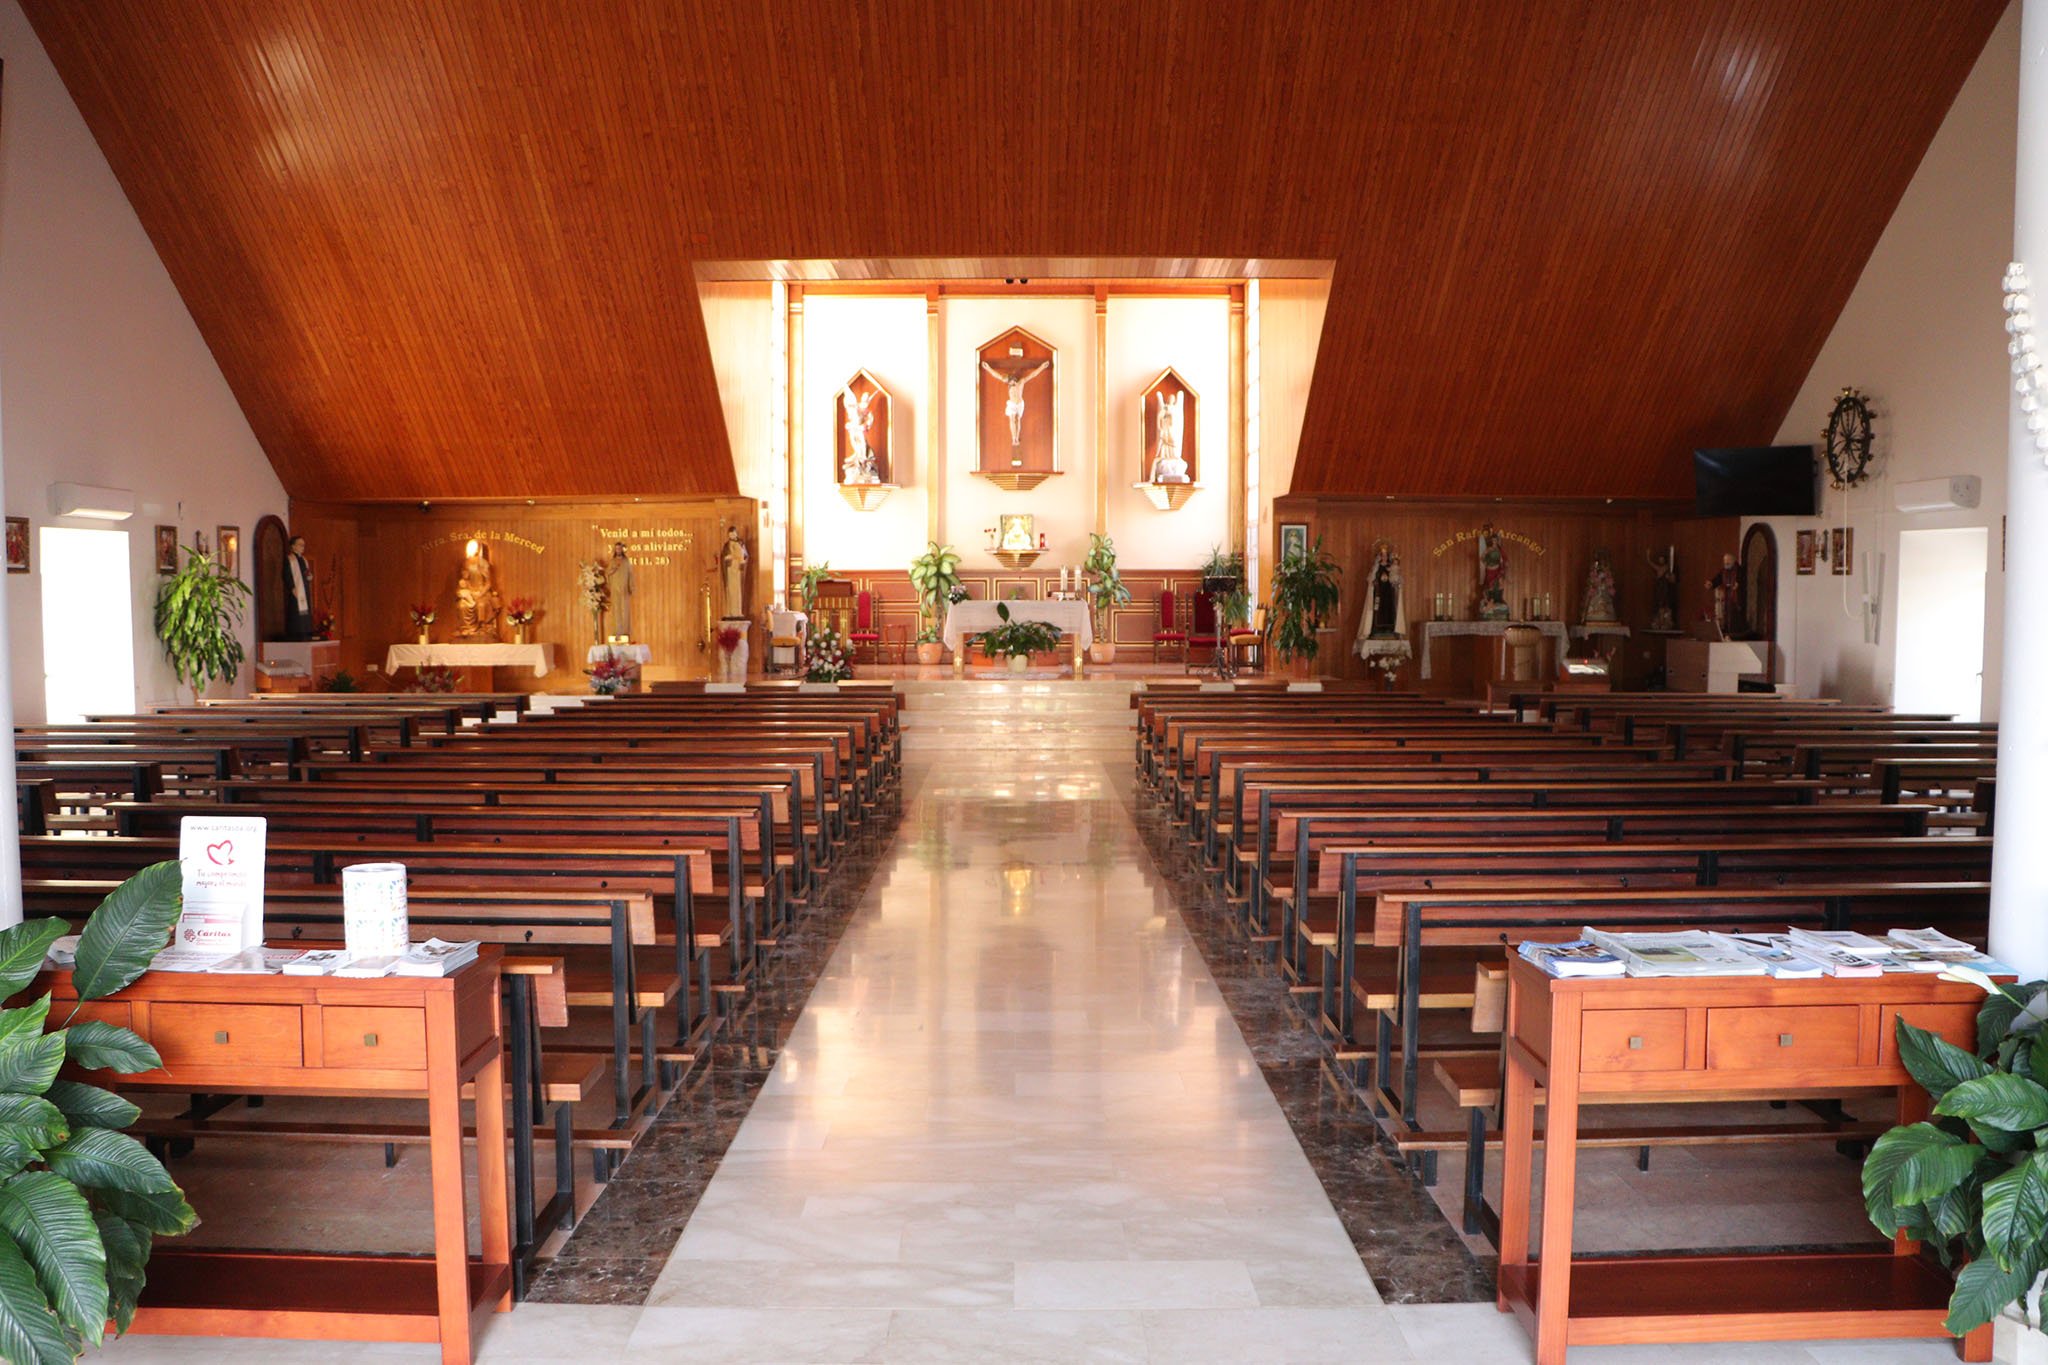 Pasillo central de la Iglesia Parroquial Nuestra Señora de la Merced